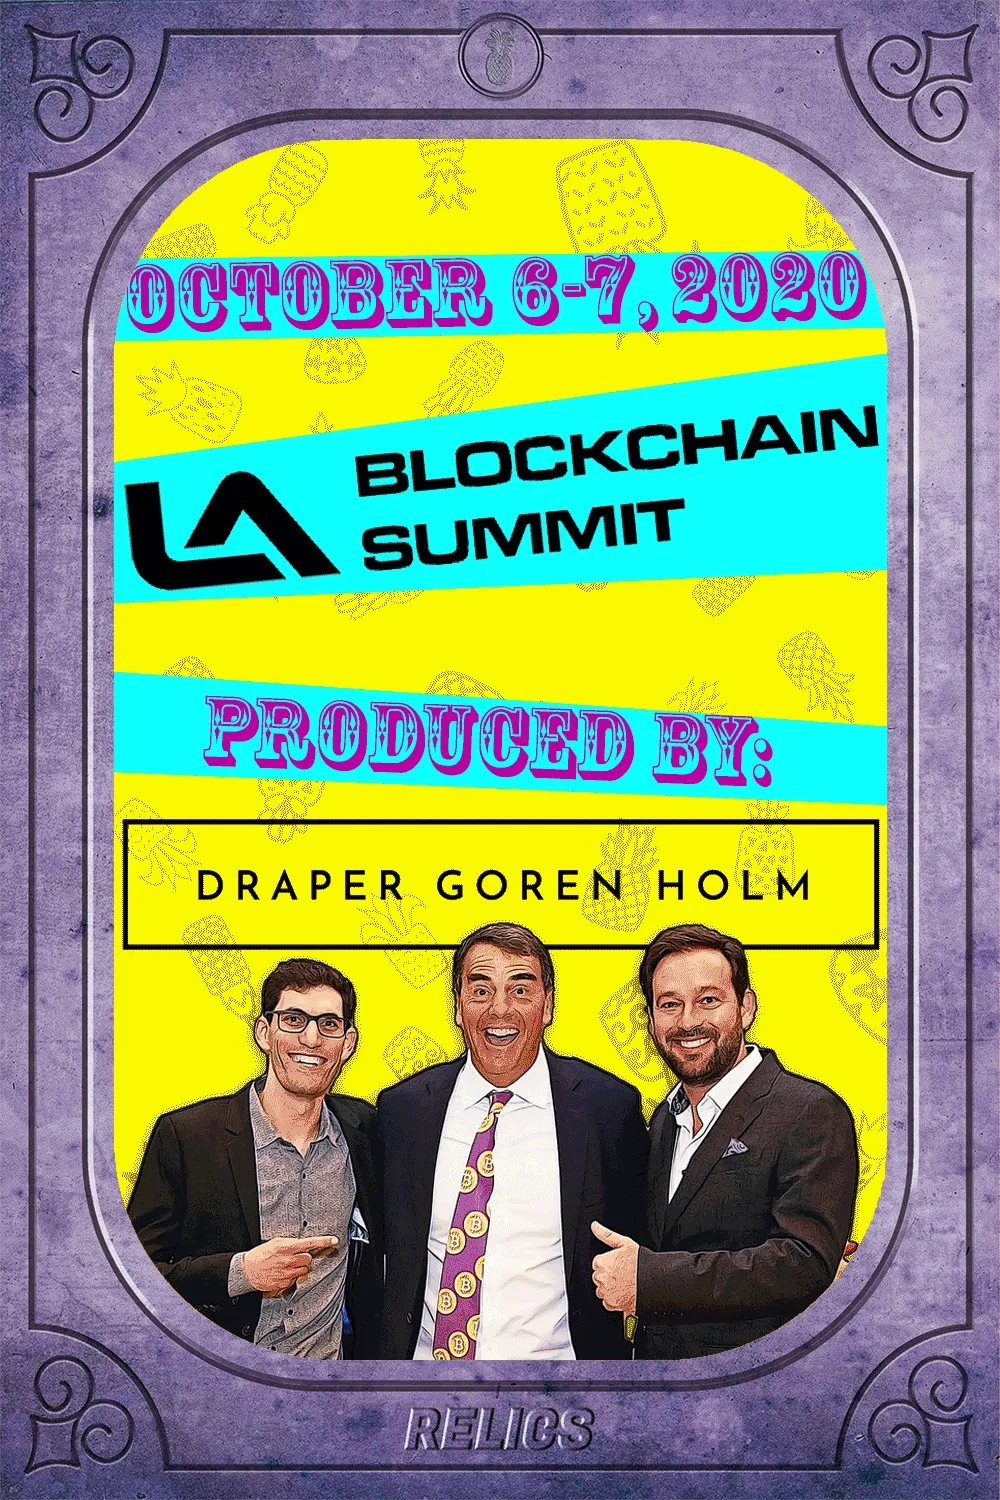 LA Blockchain Summit Relic